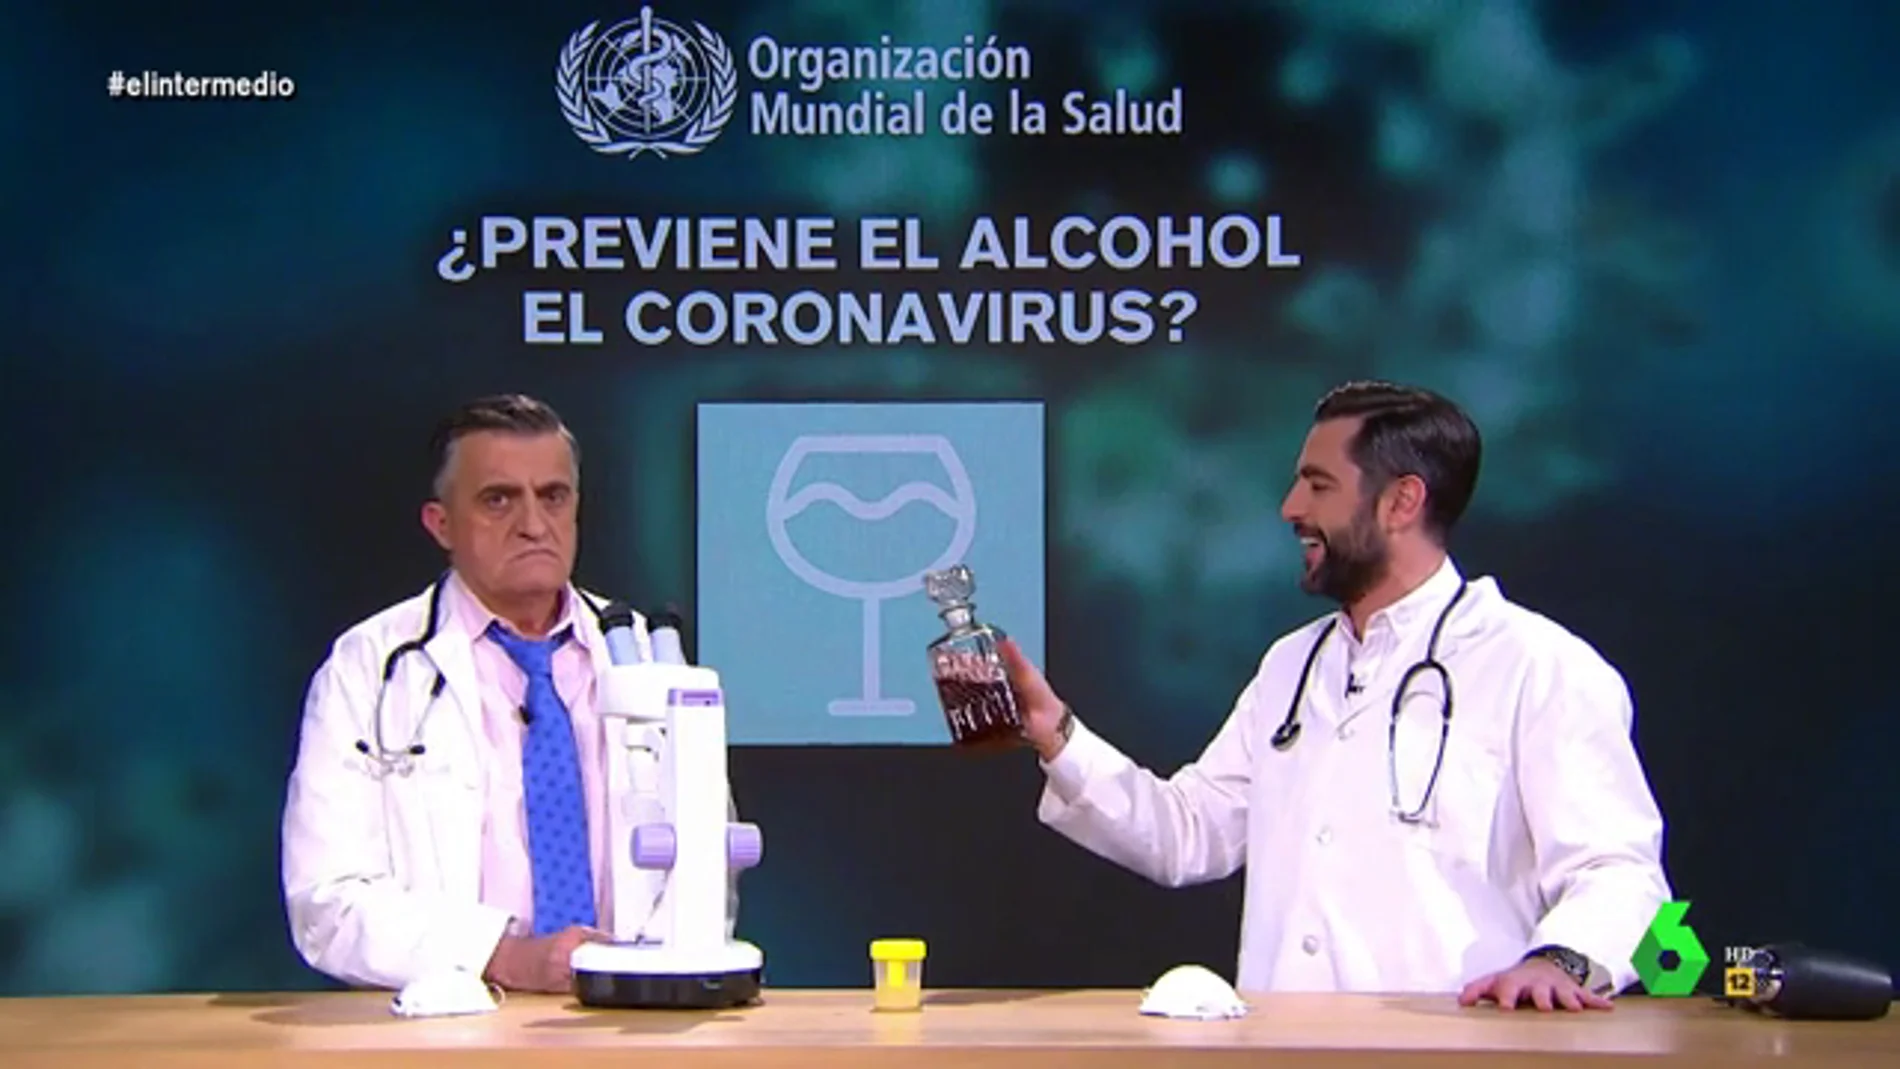 Beber orina o usar alcohol: Dani Mateo somete al 'método científico' los principales bulos sobre cómo prevenir el coronavirus